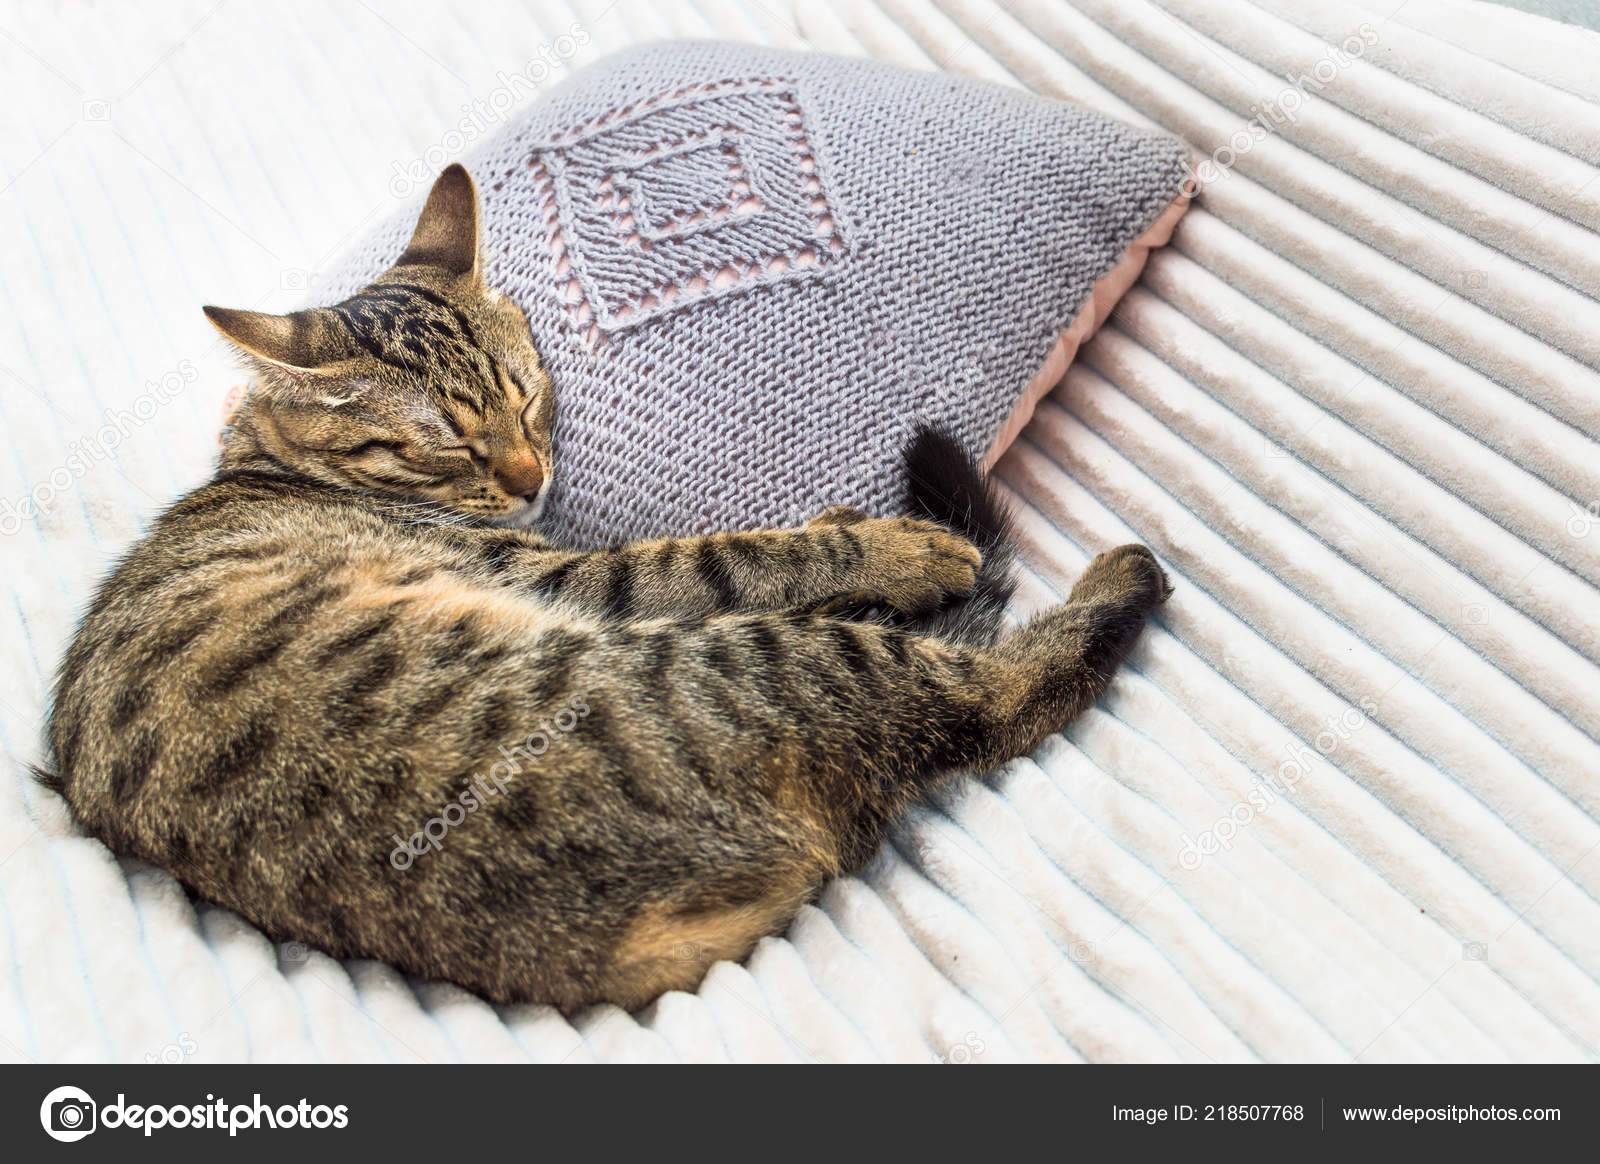 Сколько часов в сутки спит кошка? - gafki.ru